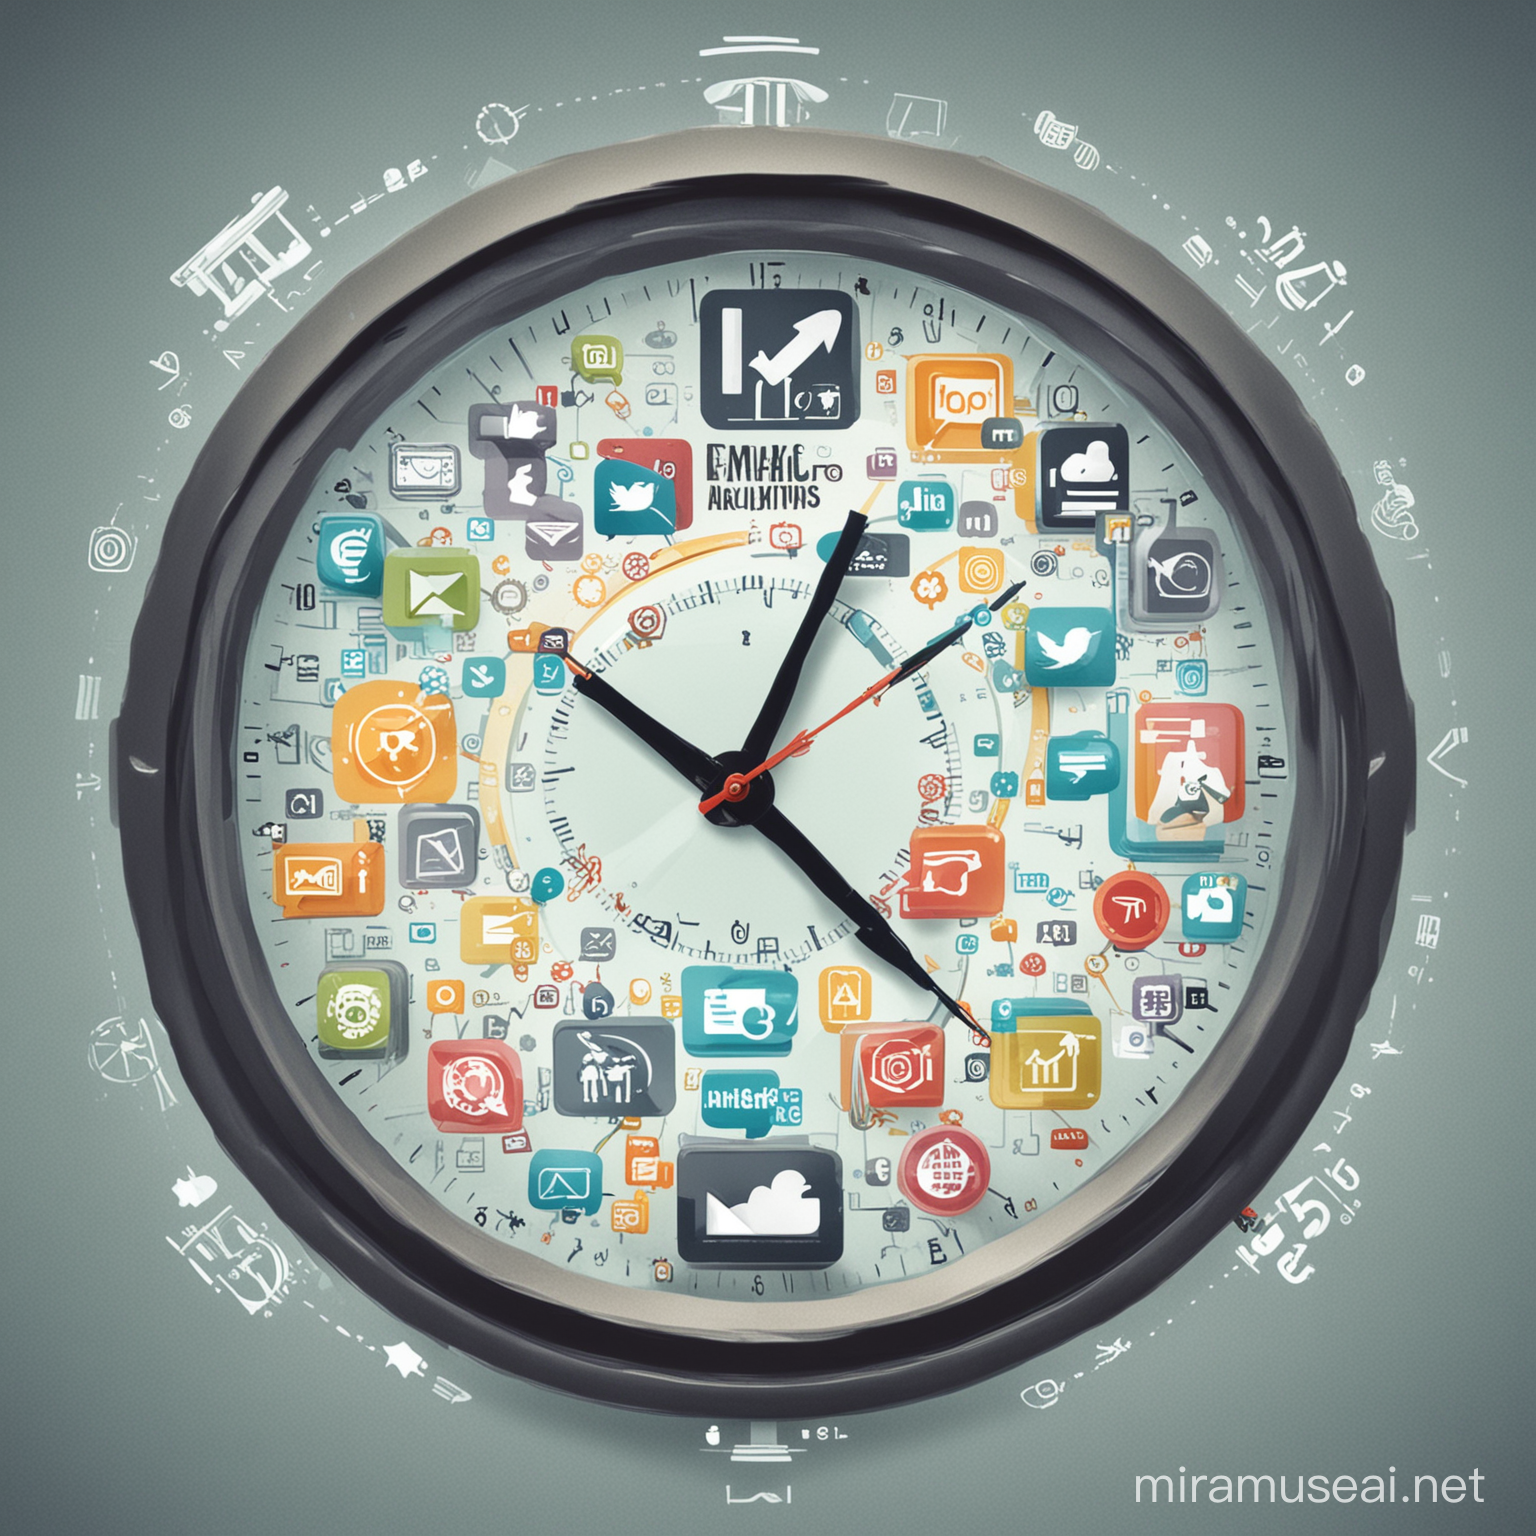 "Una ilustración de un reloj digital y varios íconos de marketing digital como correos electrónicos, redes sociales y análisis web girando alrededor del reloj, simbolizando la eficiencia y el ahorro de tiempo gracias al marketing automatizado."